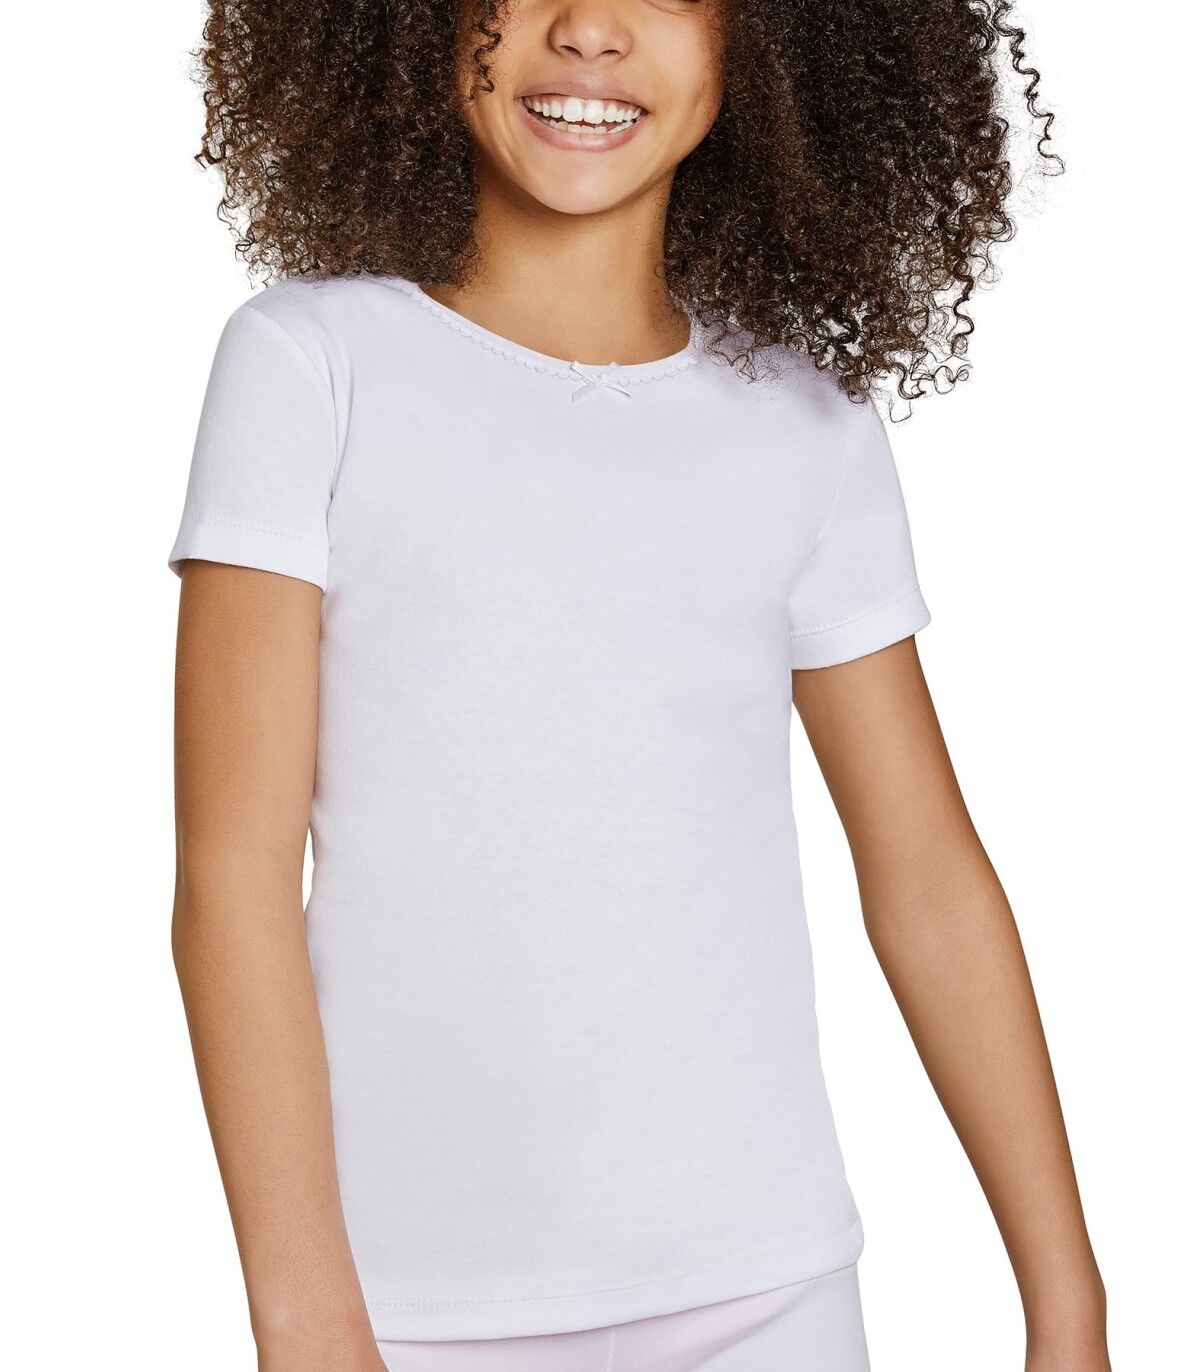 Camiseta infantil Manga corta Ysabel Mora 18307 2 Blanco